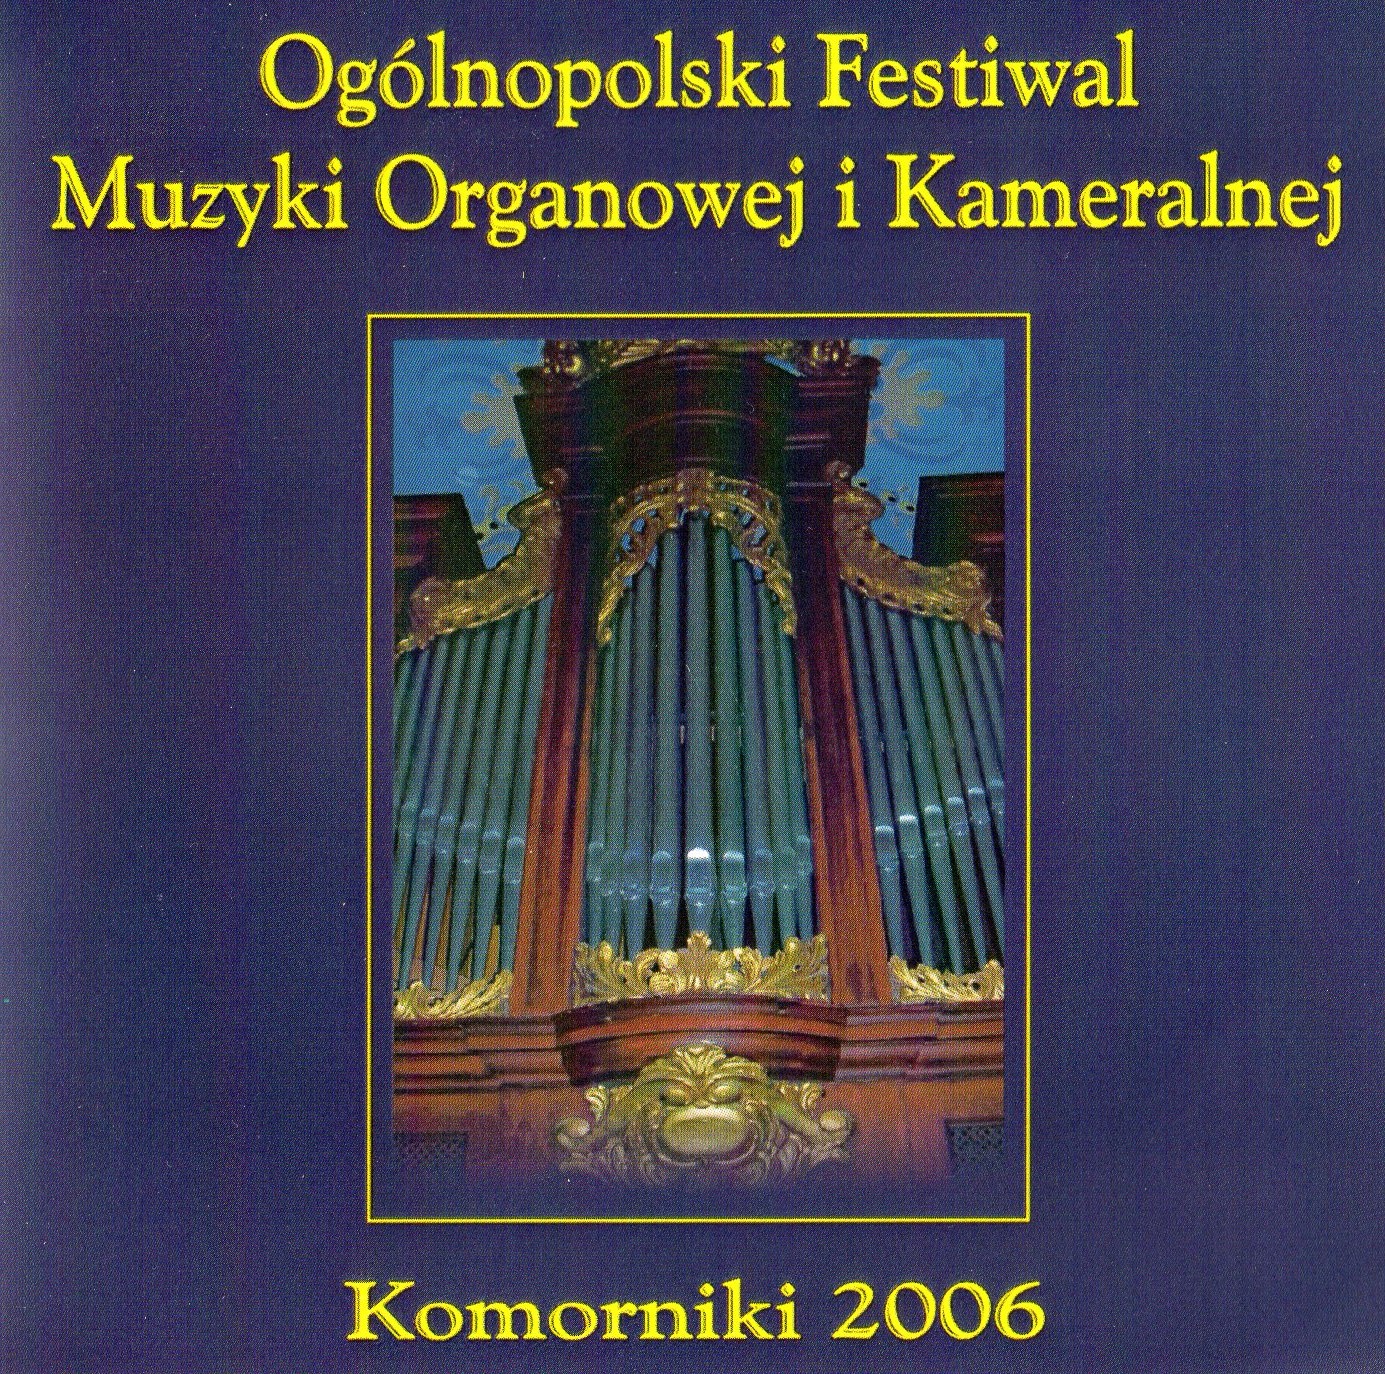 Komorniki 2006 - I Ogólnopolski Festiwal Muzyki Organowej i Kameralnej